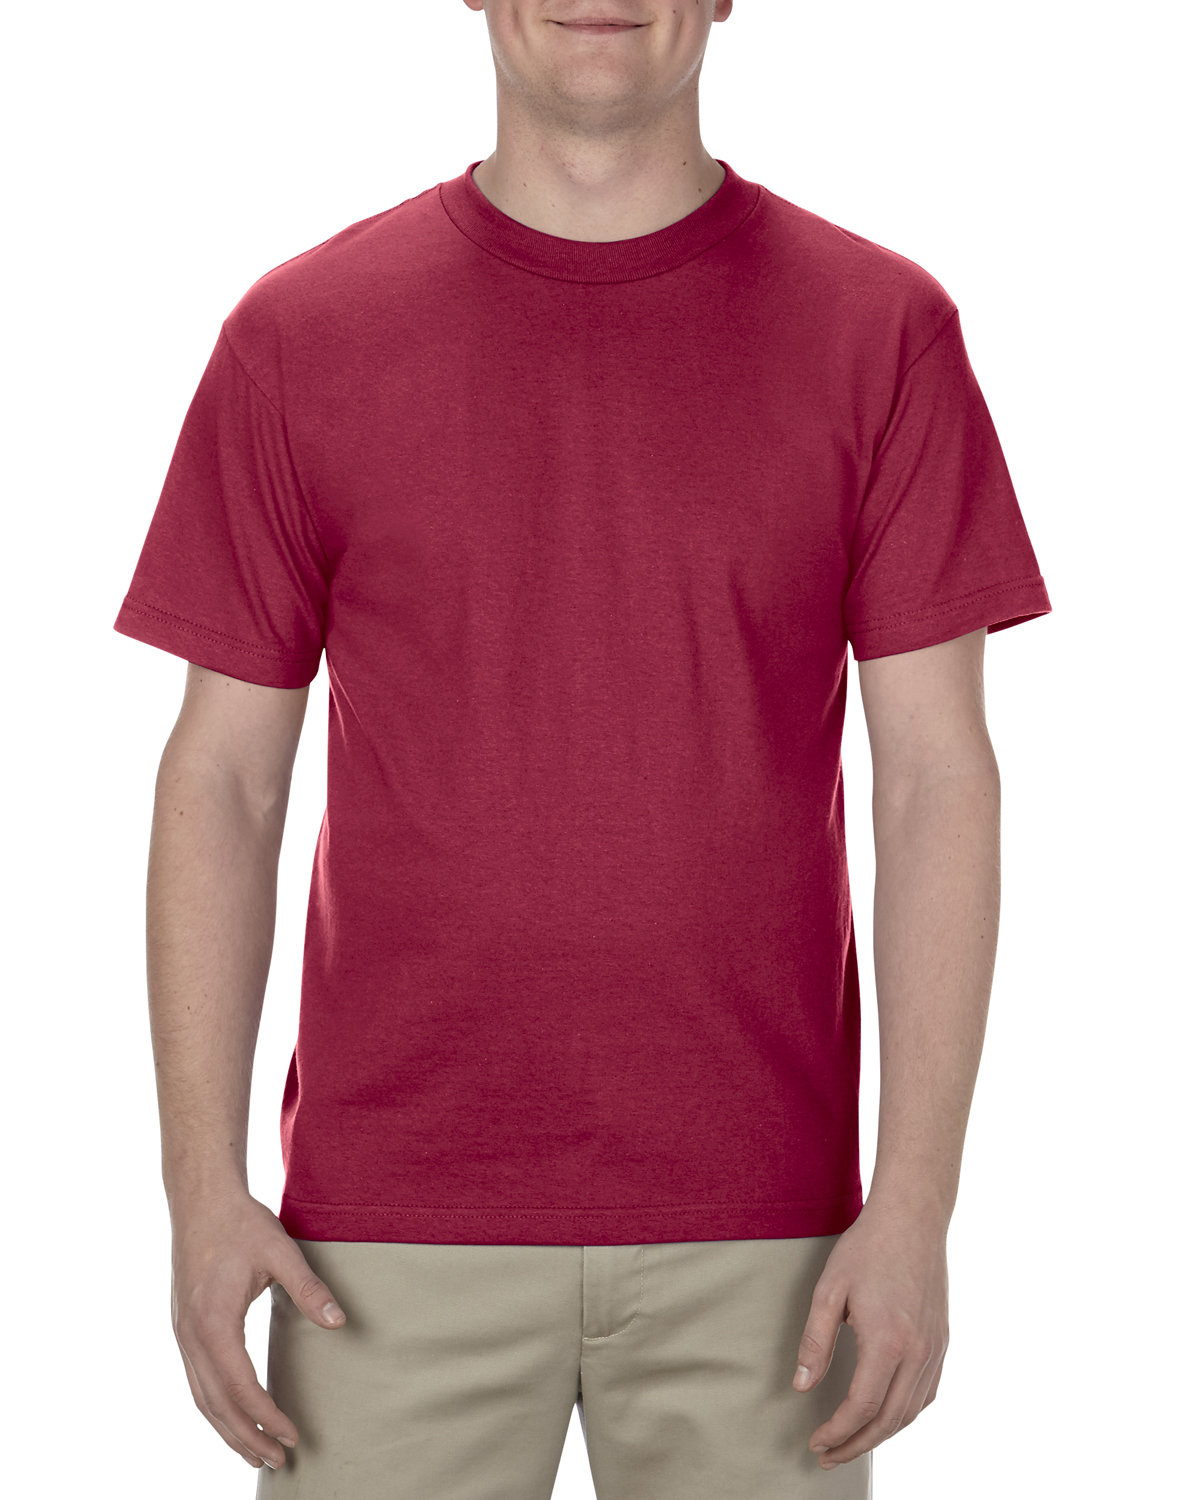 American Apparel Adult 6.0 oz., 100% Cotton T-Shirt CARDINAL 